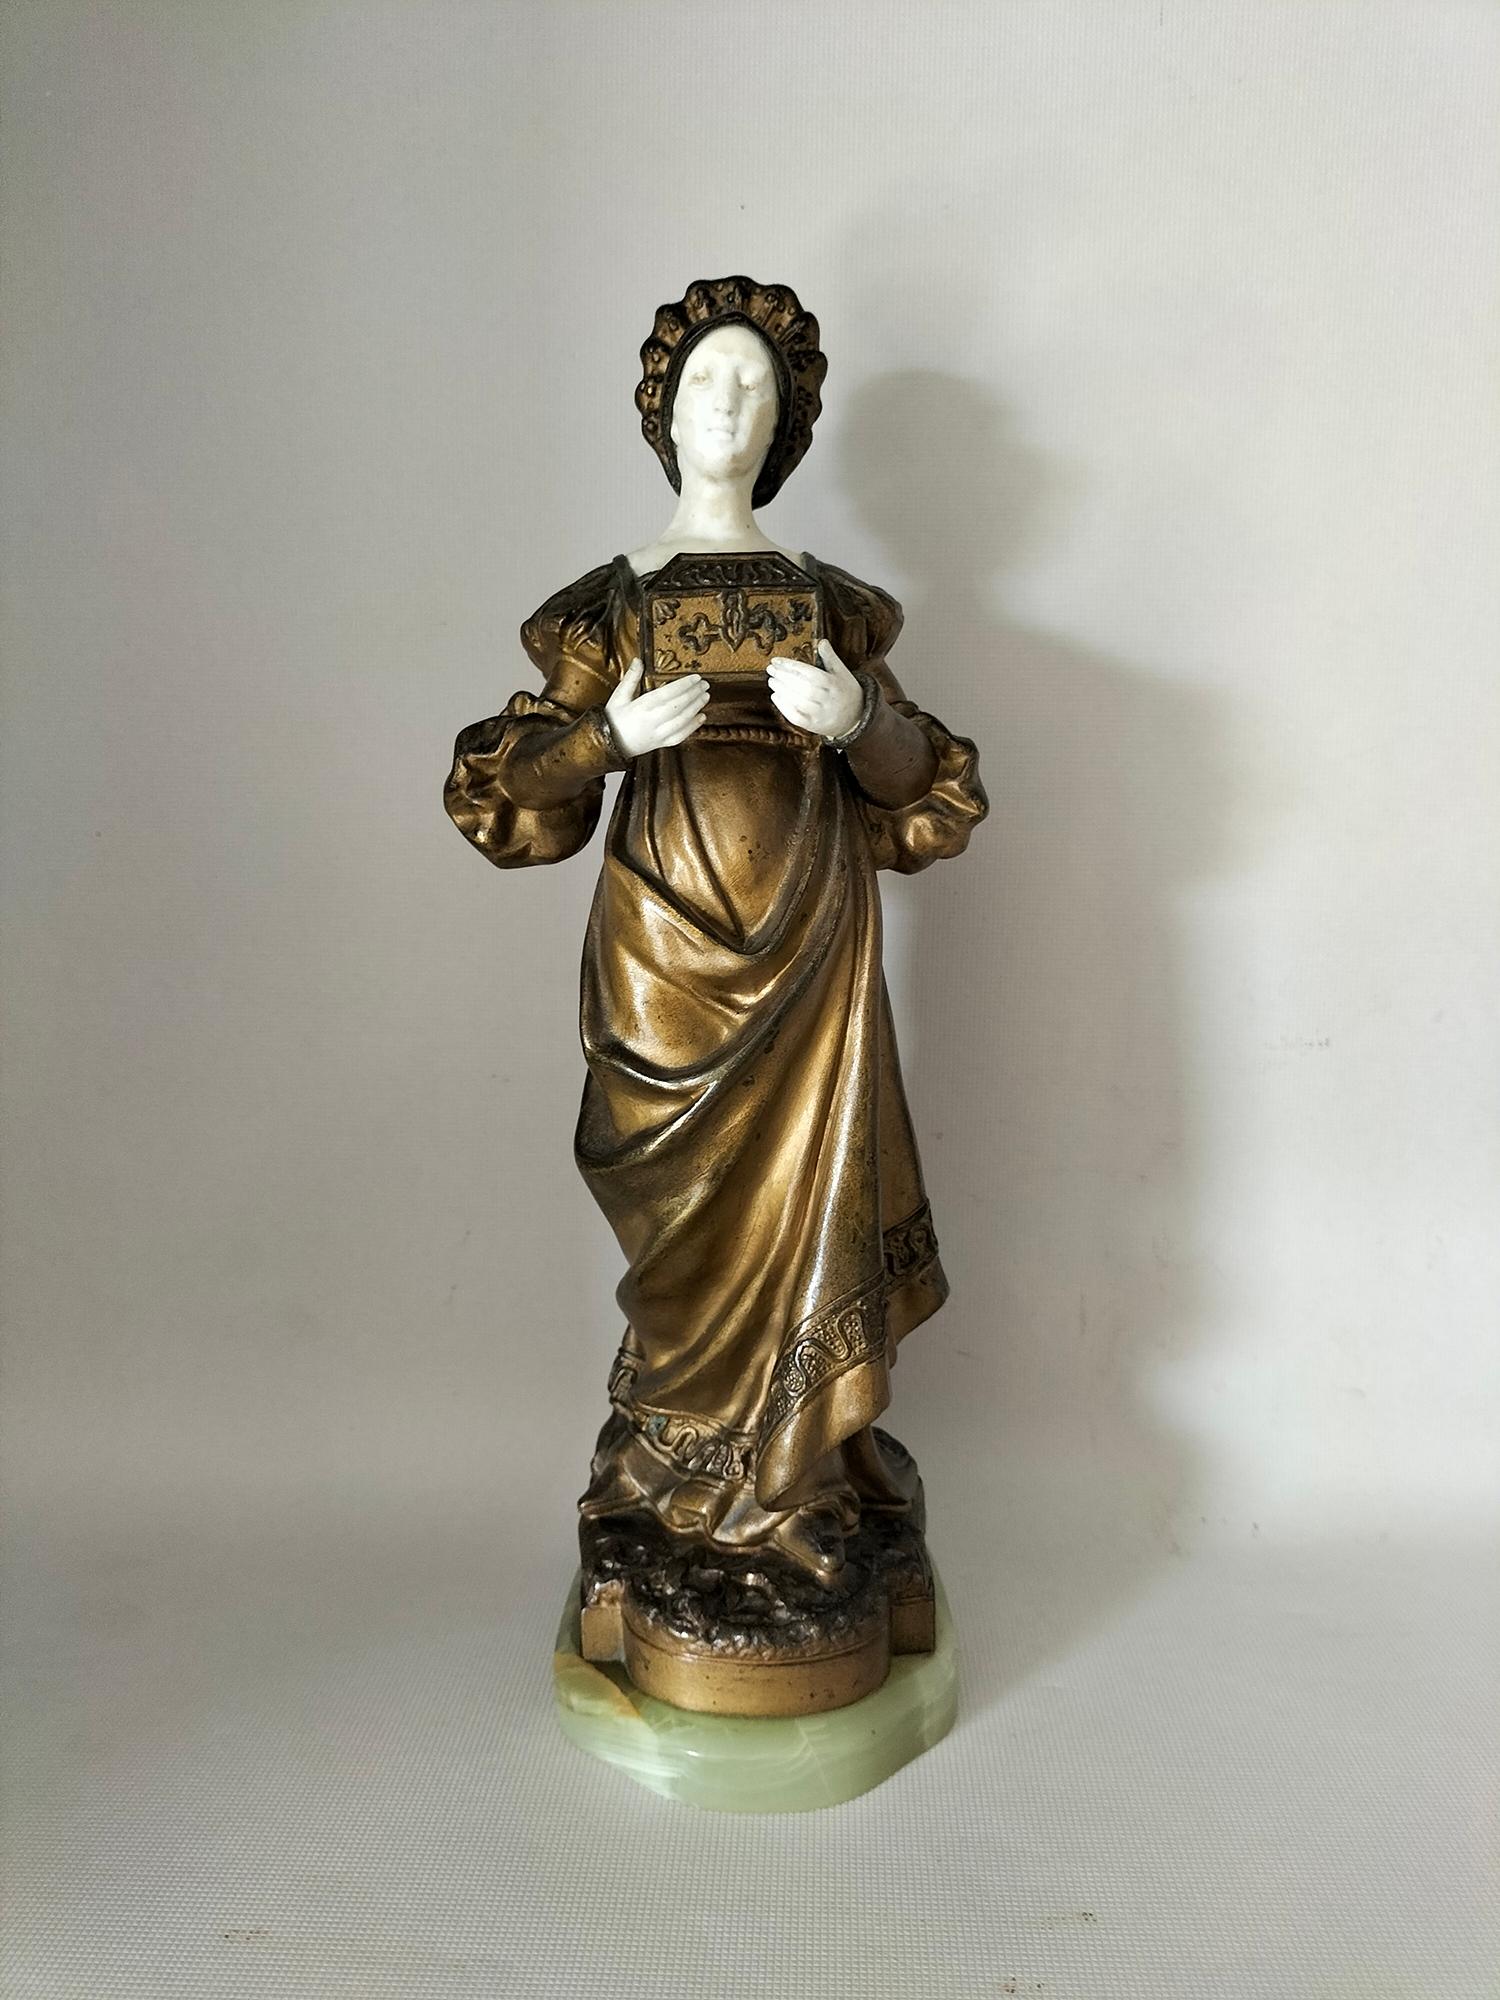 Figurine en calamine patinée dans différents tons dorés, représentant une femme en robe d'époque, portant un coffre.
Ses mains et son visage sont en biscuit, avec quelques traces d'usure sur le visage.
La base est en jade
Dame à la poitrine